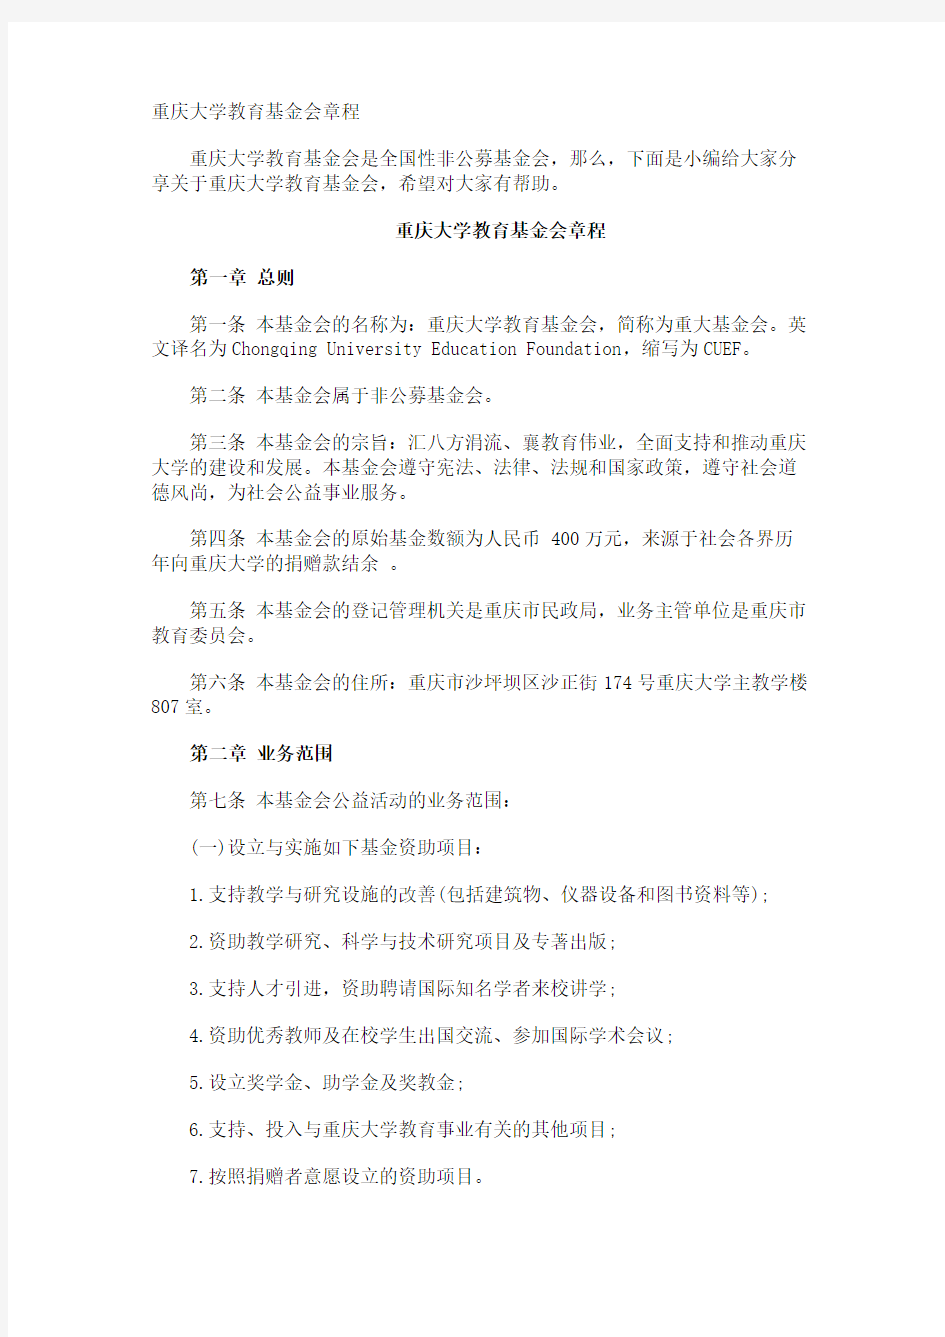 重庆大学教育基金会章程